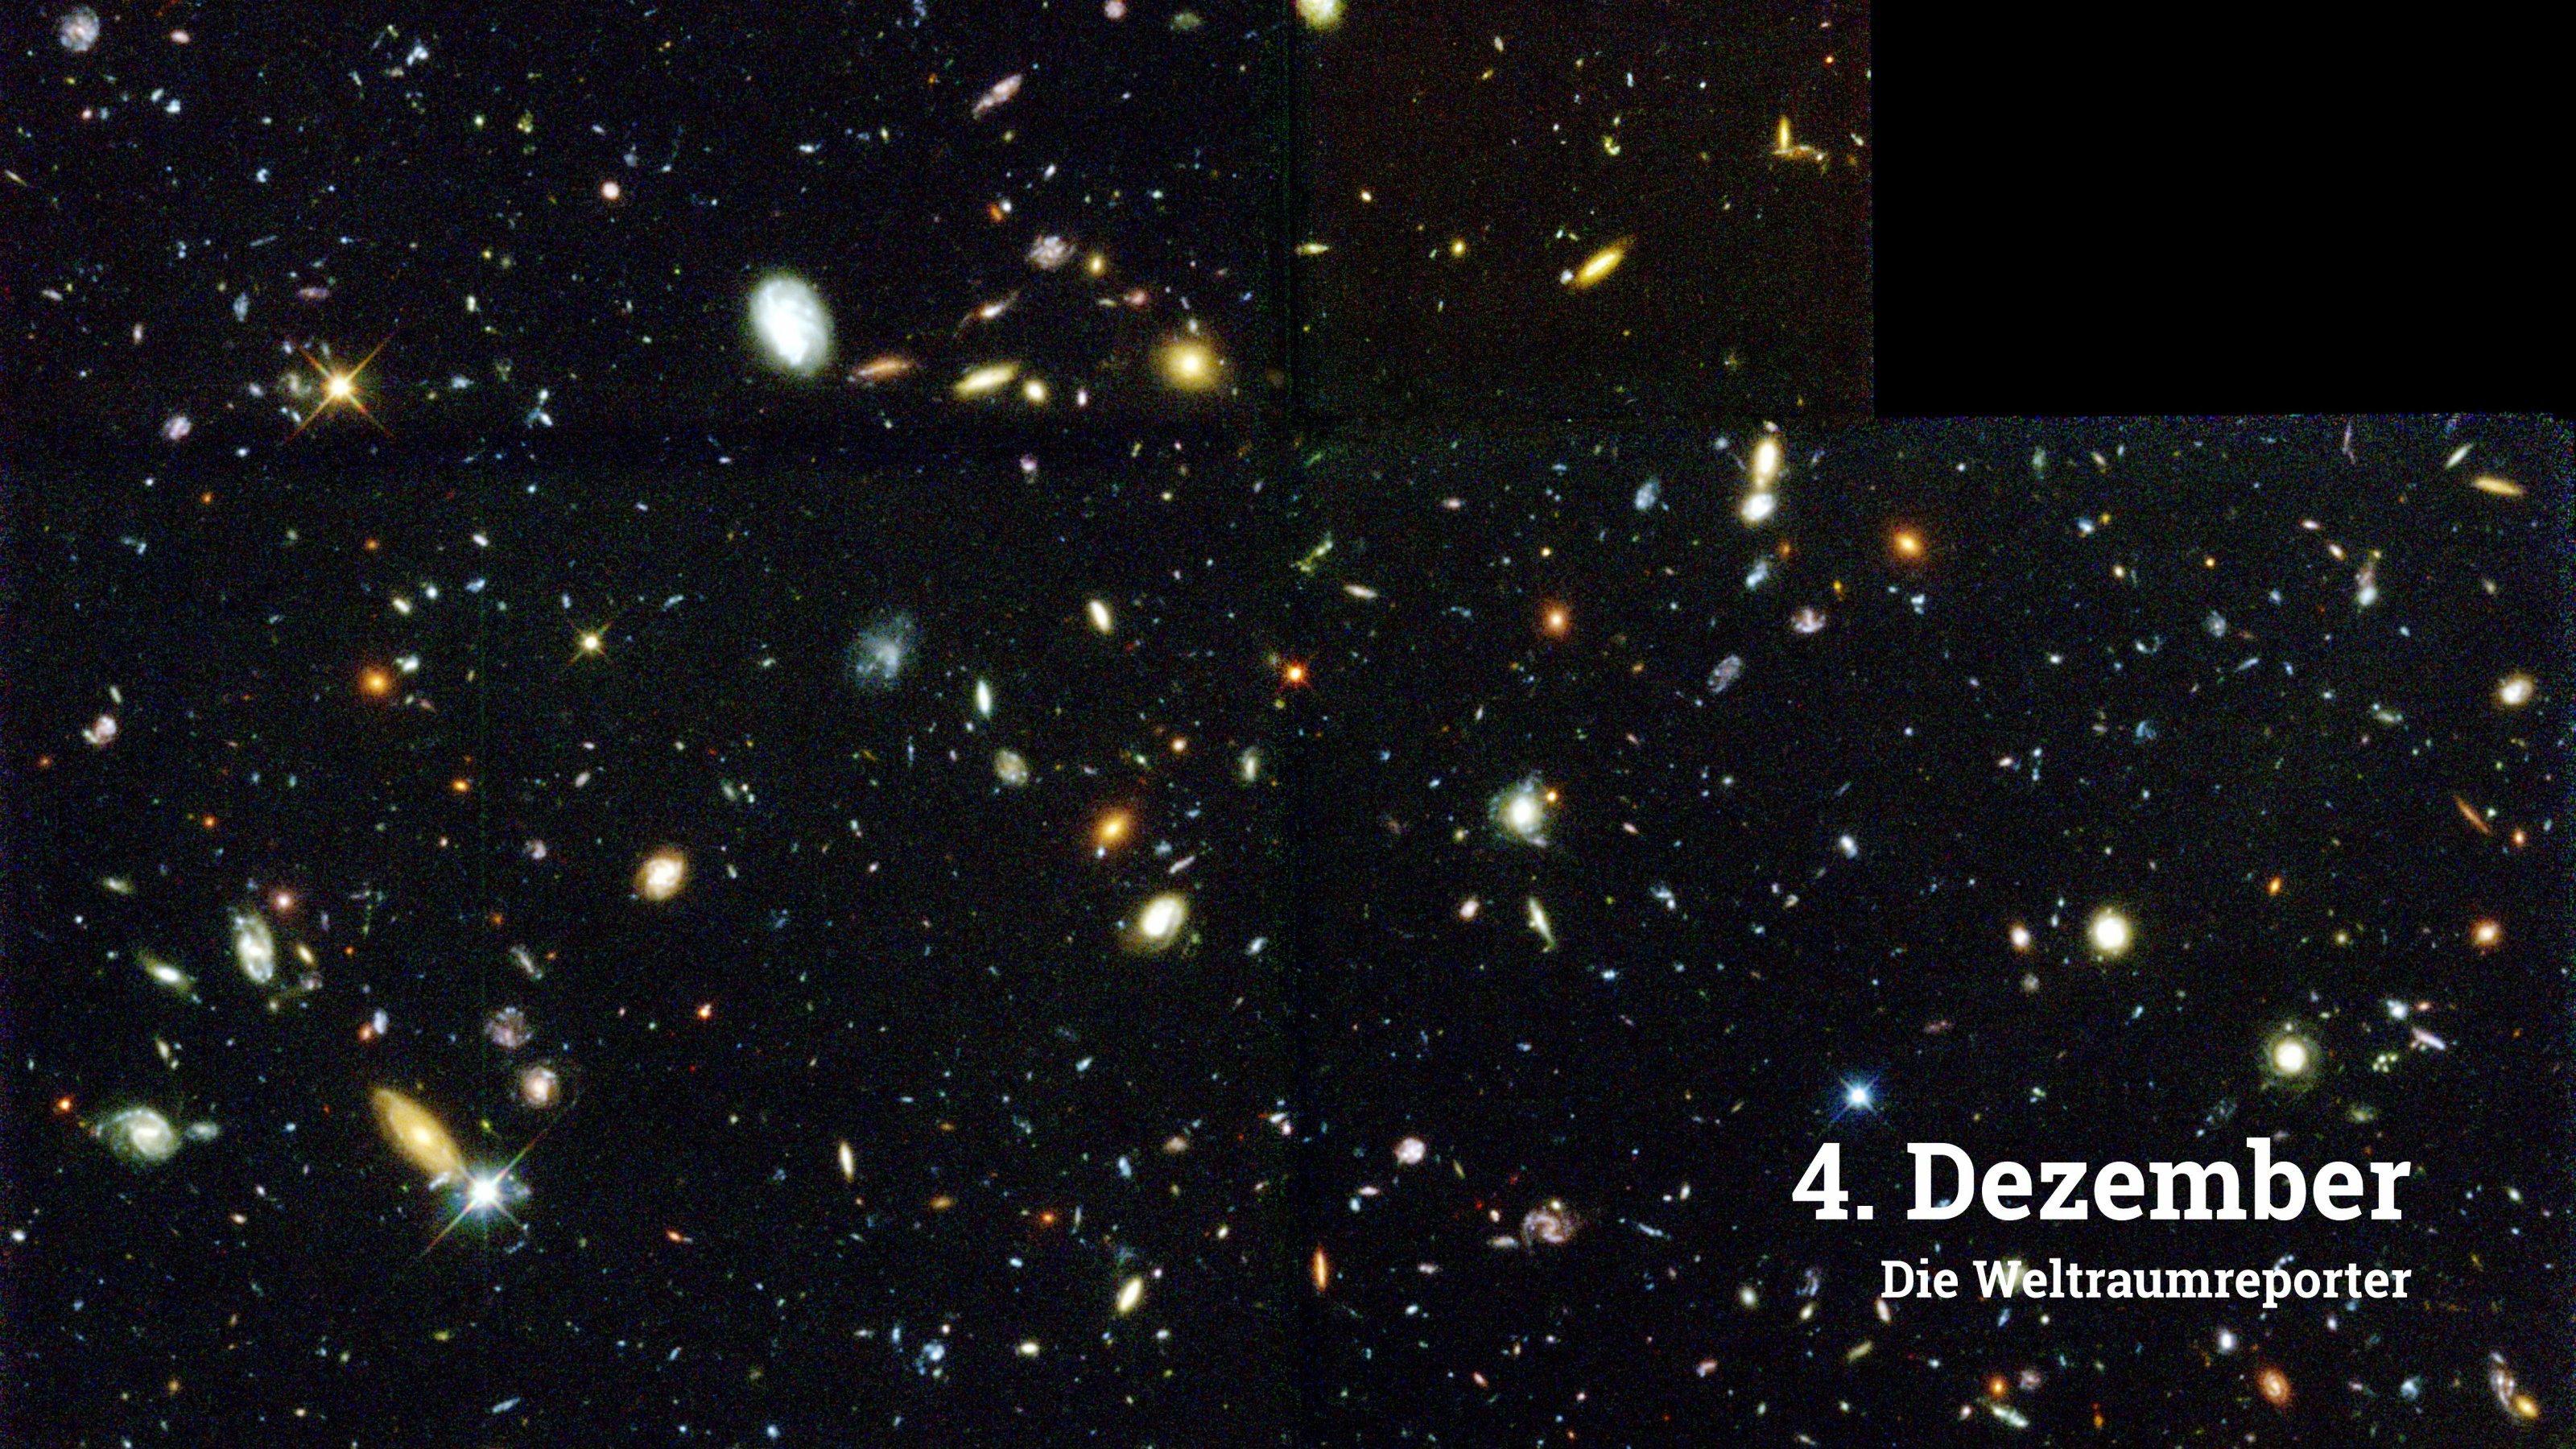 Zu sehen sind tausende von Galaxien in unterschiedlichen Farben und Formen. Das Hubble Deep Field zeigt aufgrund der langen Belichtungszeit auch sehr leuchtschwache und weit entfernte Galaxien, deren Licht Milliarden von Lichtjahren durch das Universum unterwegs war, bis es im Jahr 1995 über einen Zeitraum von zehn Tagen vom Hubble-Weltraumteleskop gesammelt wurde.